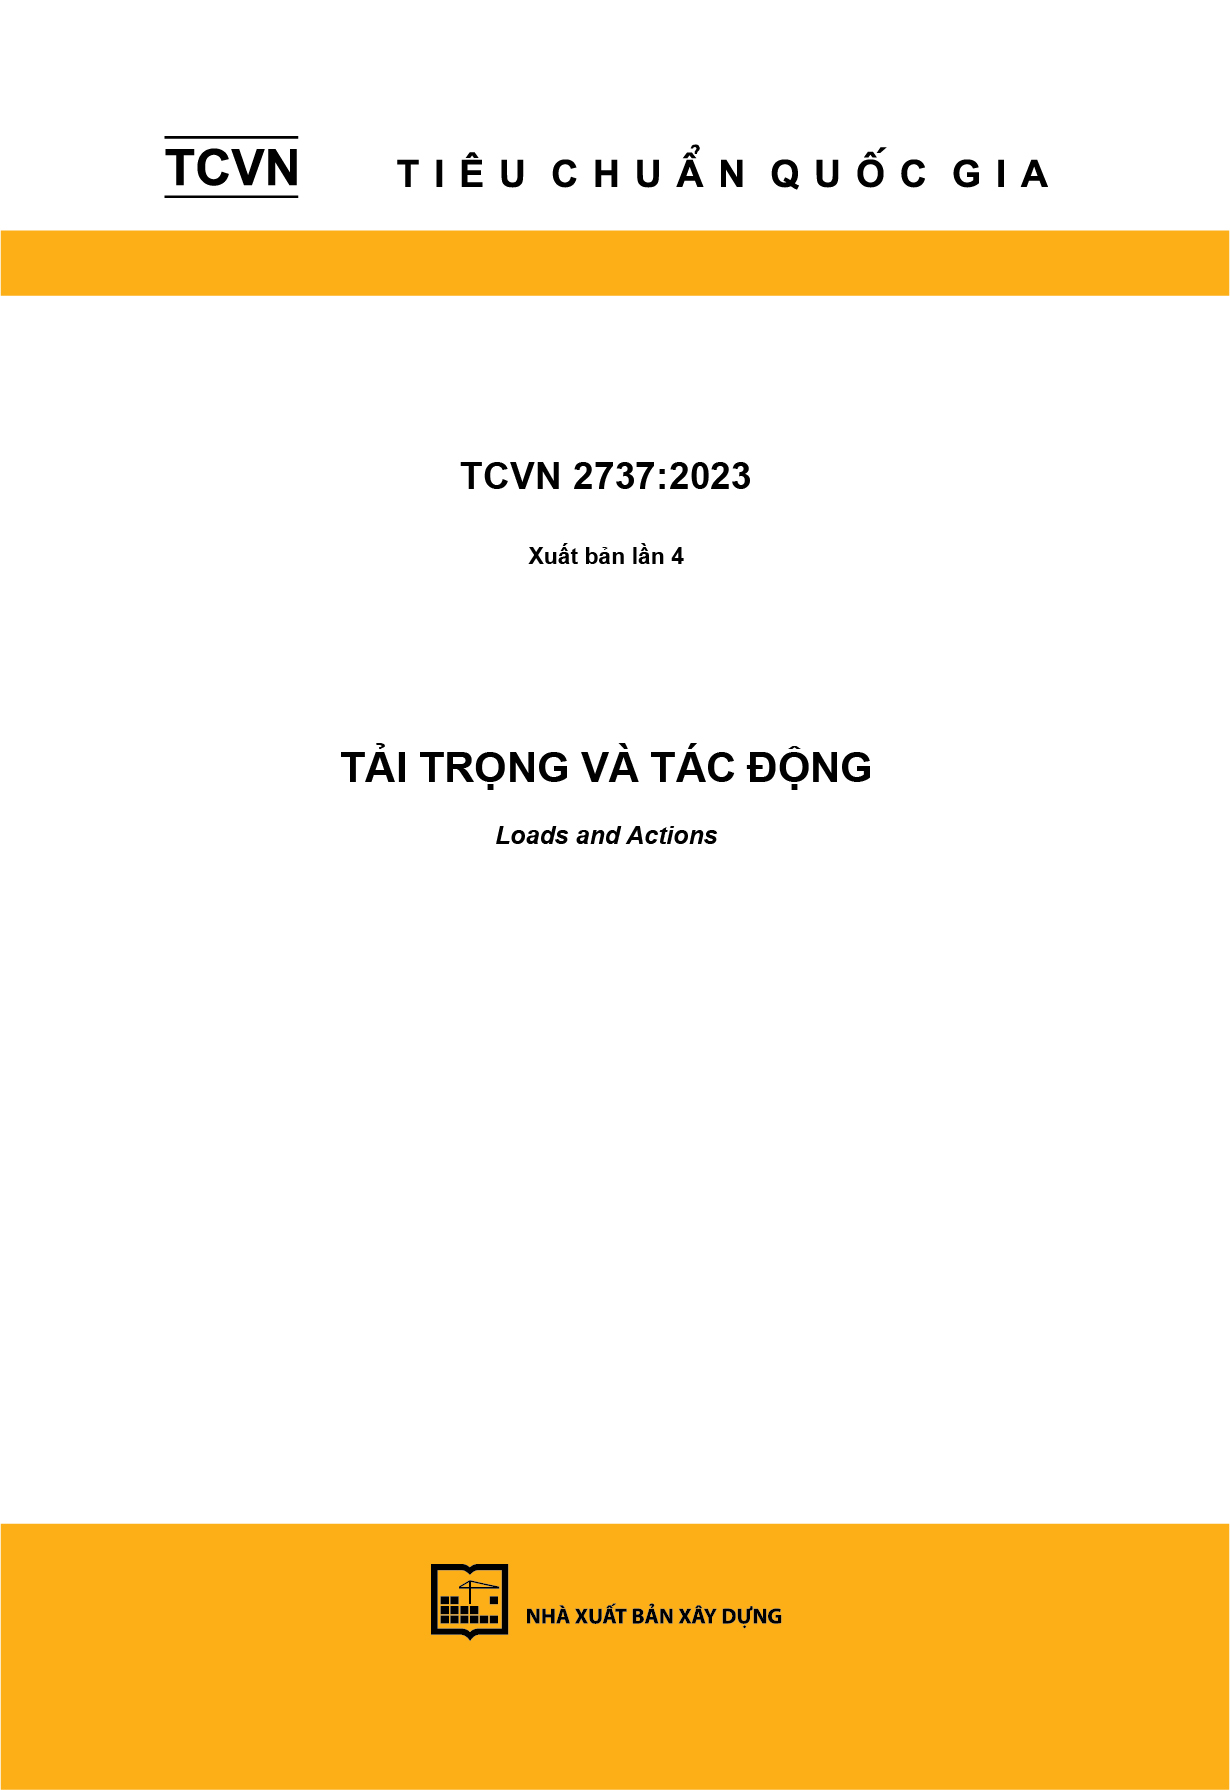 TCVN 2737:2023 (Xuất bản lần 4) Tải trọng và tác động